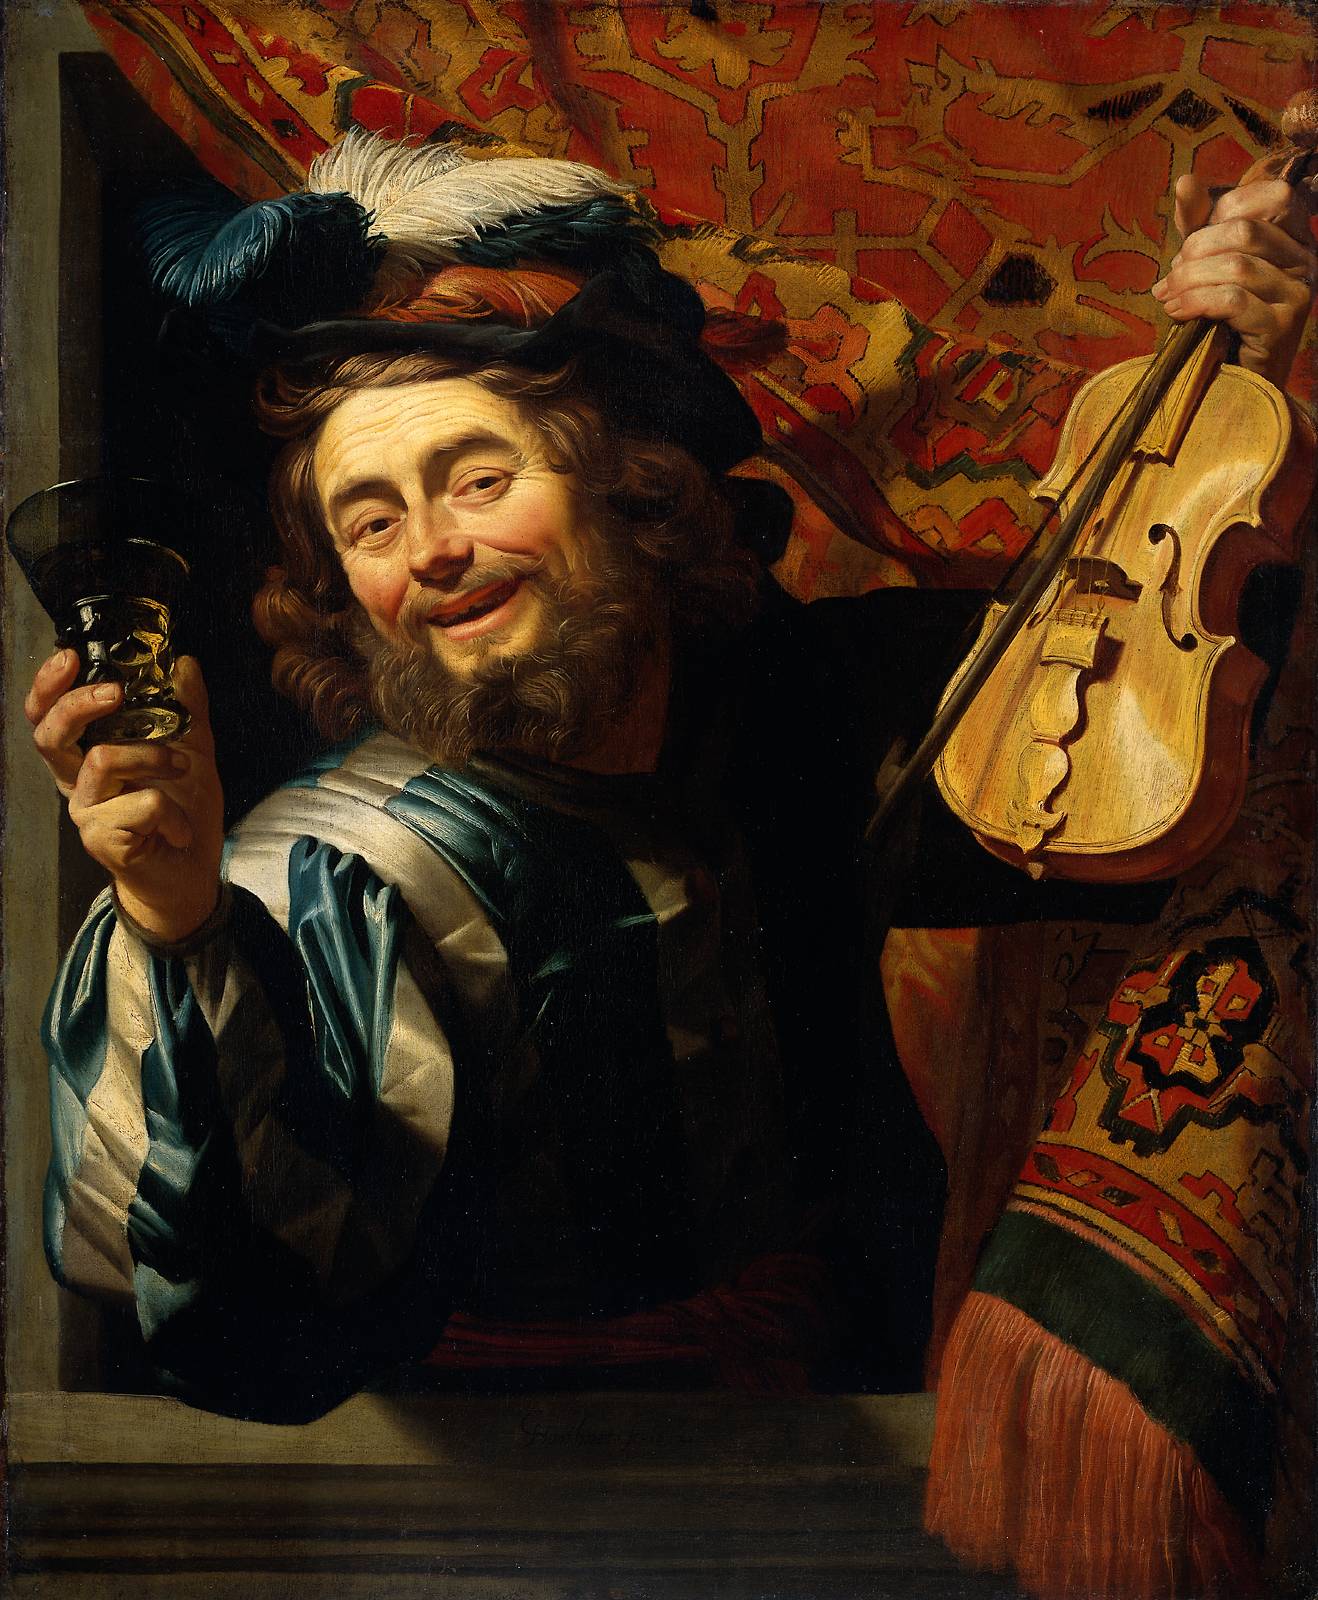 L'allegro violinista by Gerard van Honthorst - 1623 - 107.2 x 88.3 cm 